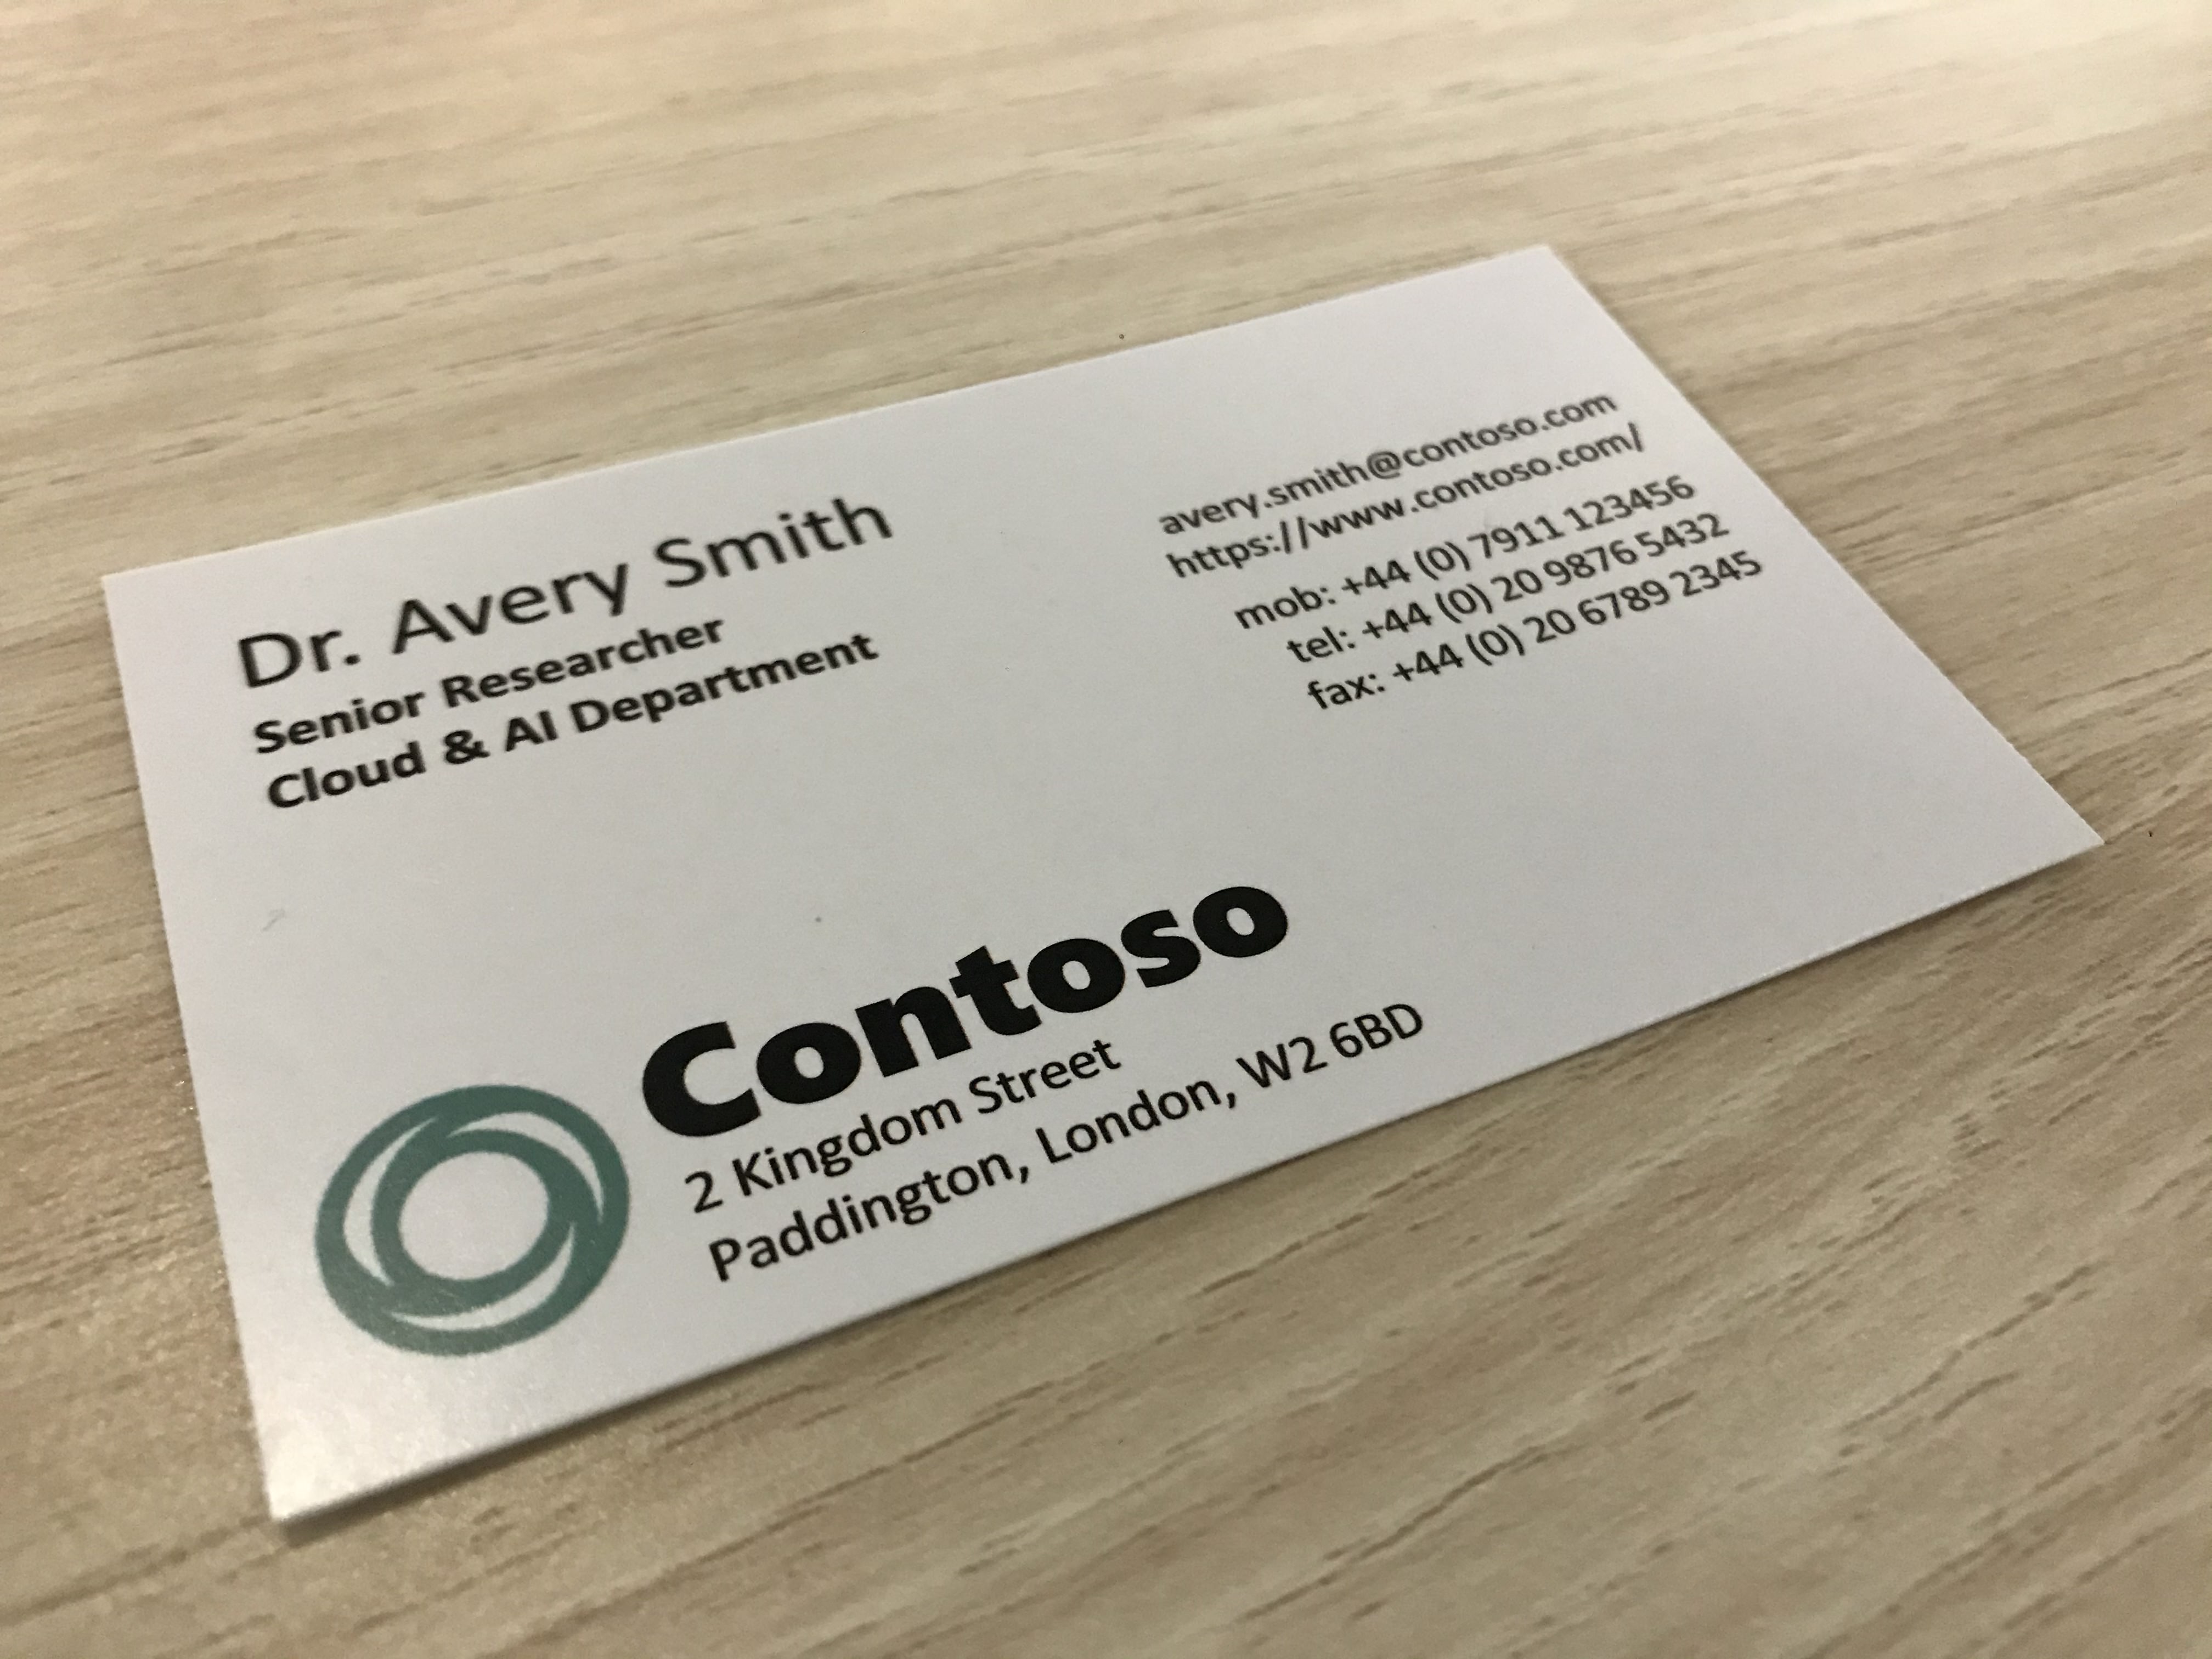 Imagem que mostra um cartão de visita de uma empresa chamada Contoso.